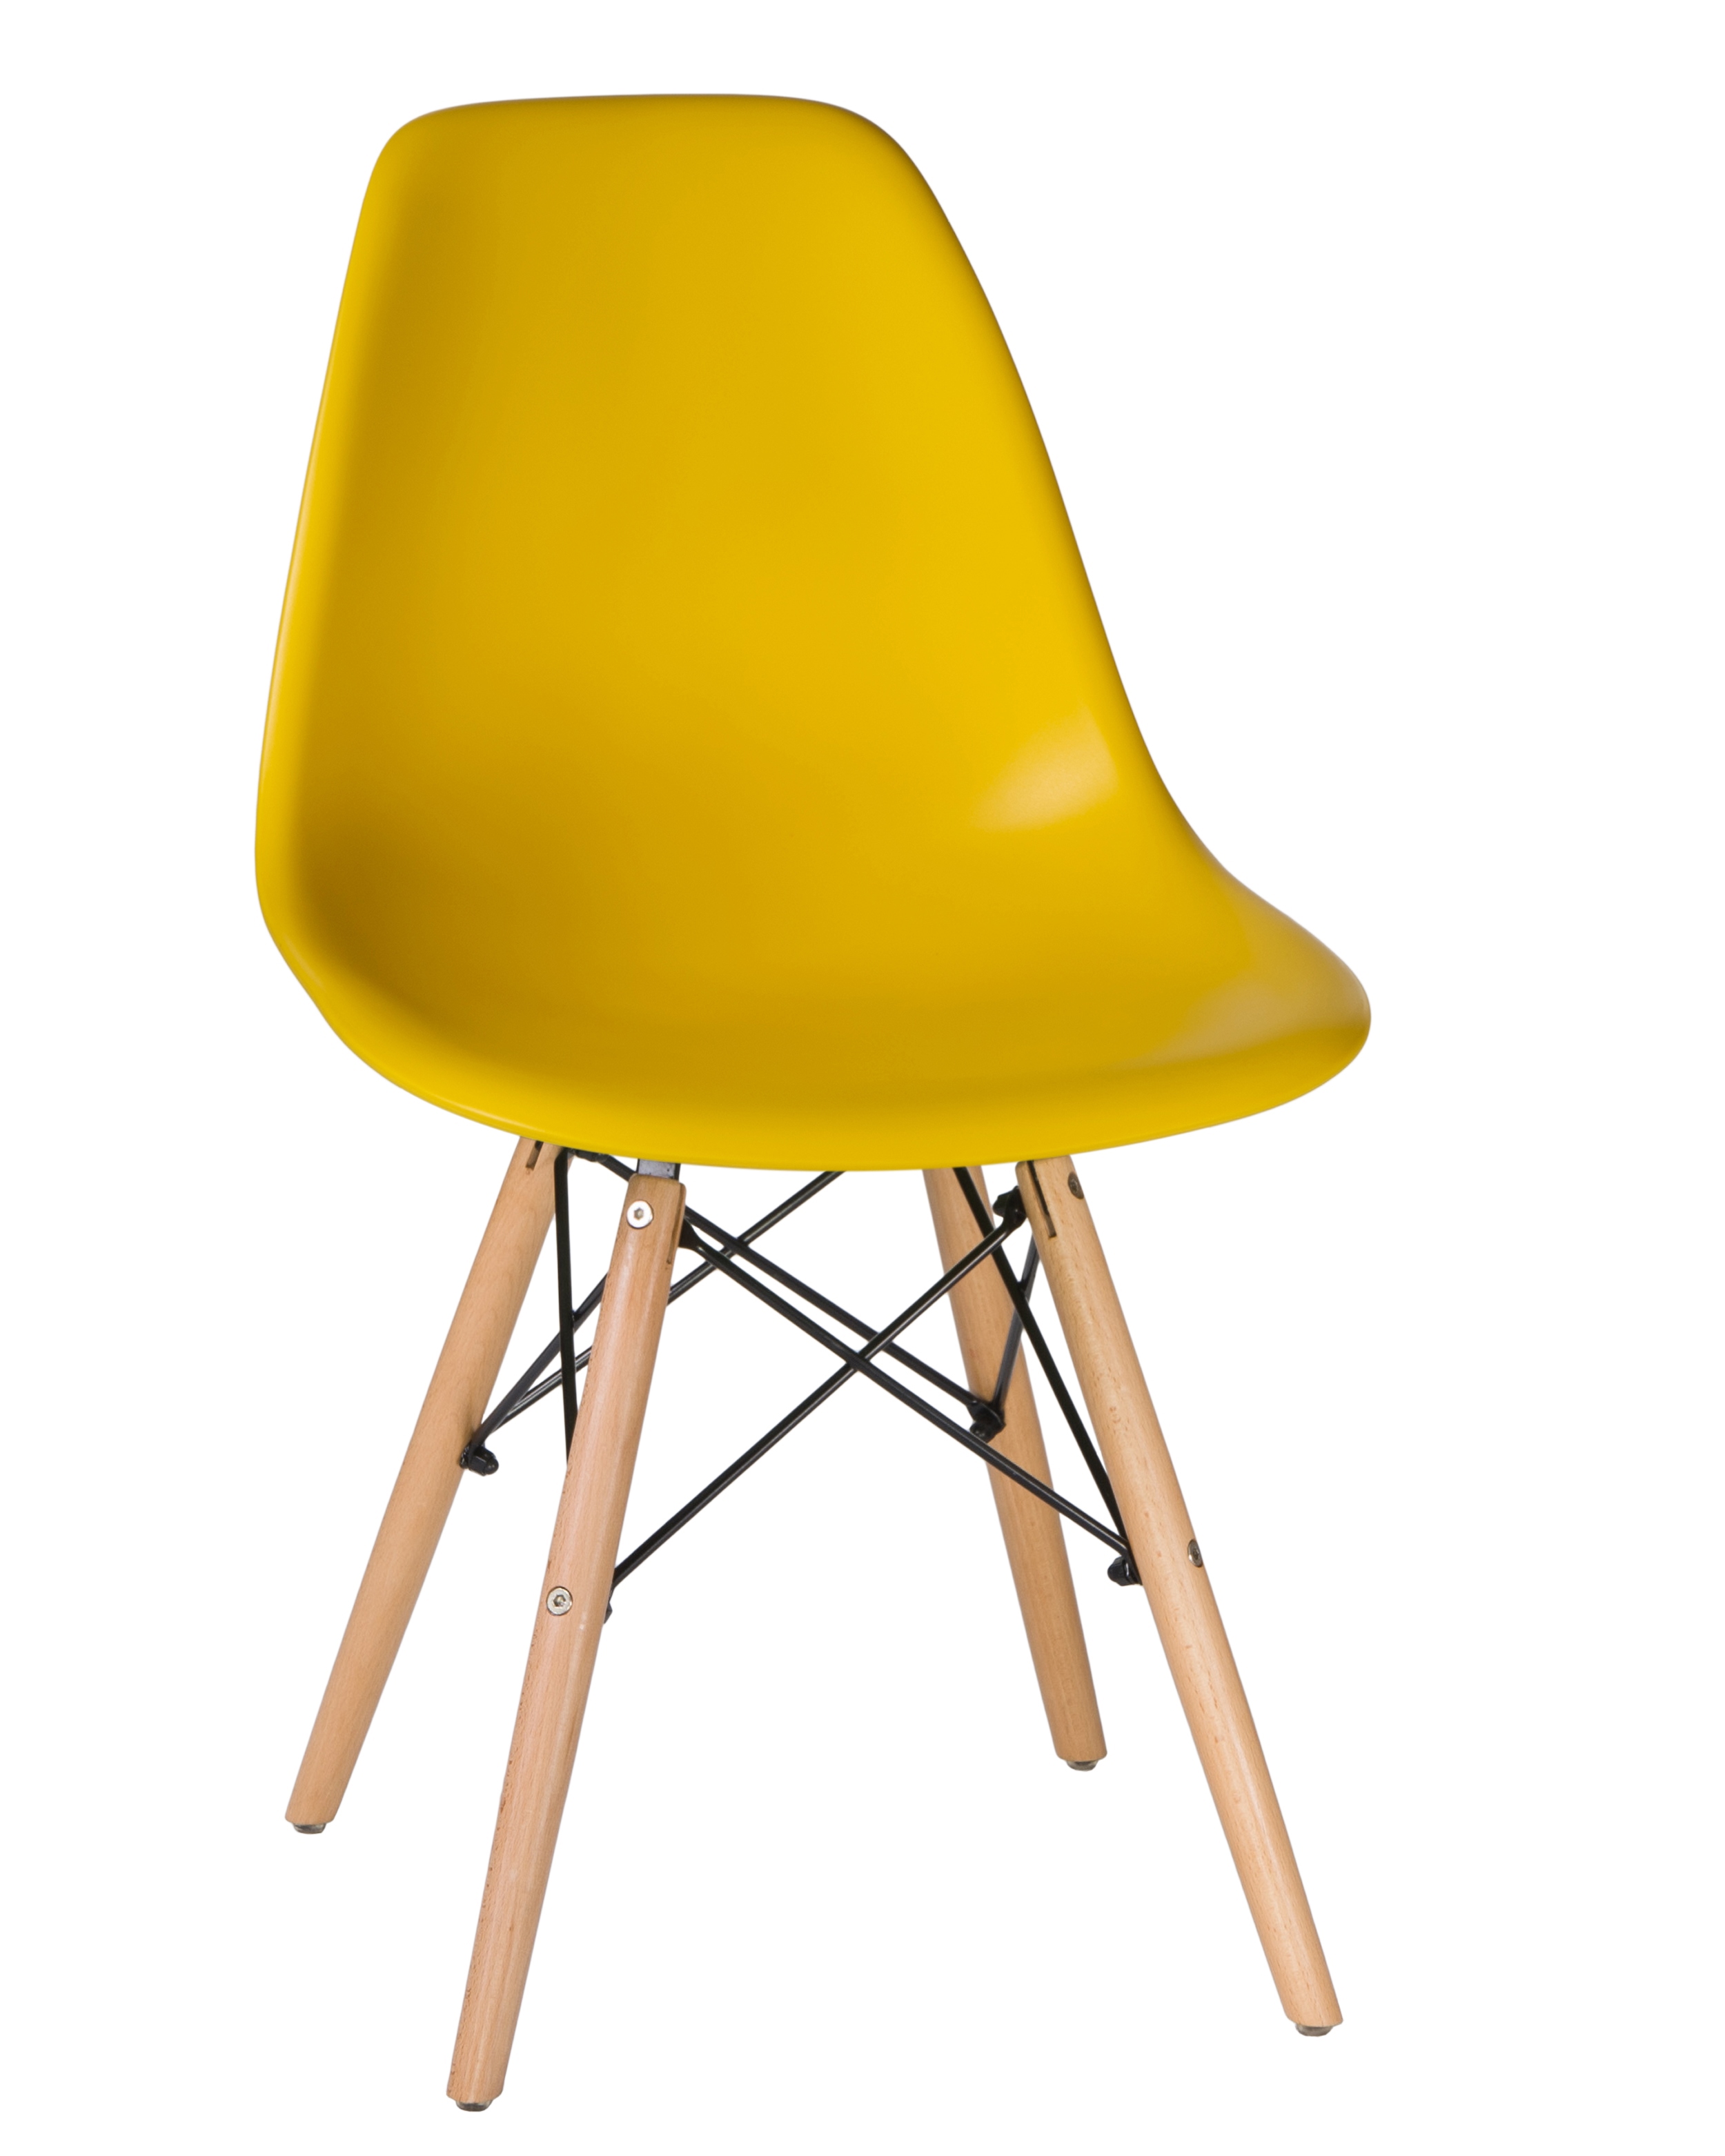 90297717 Кухонный стул DSW 46х80х53см полипропилен цвет желтый LMZL STLM-0173545 DOBRIN